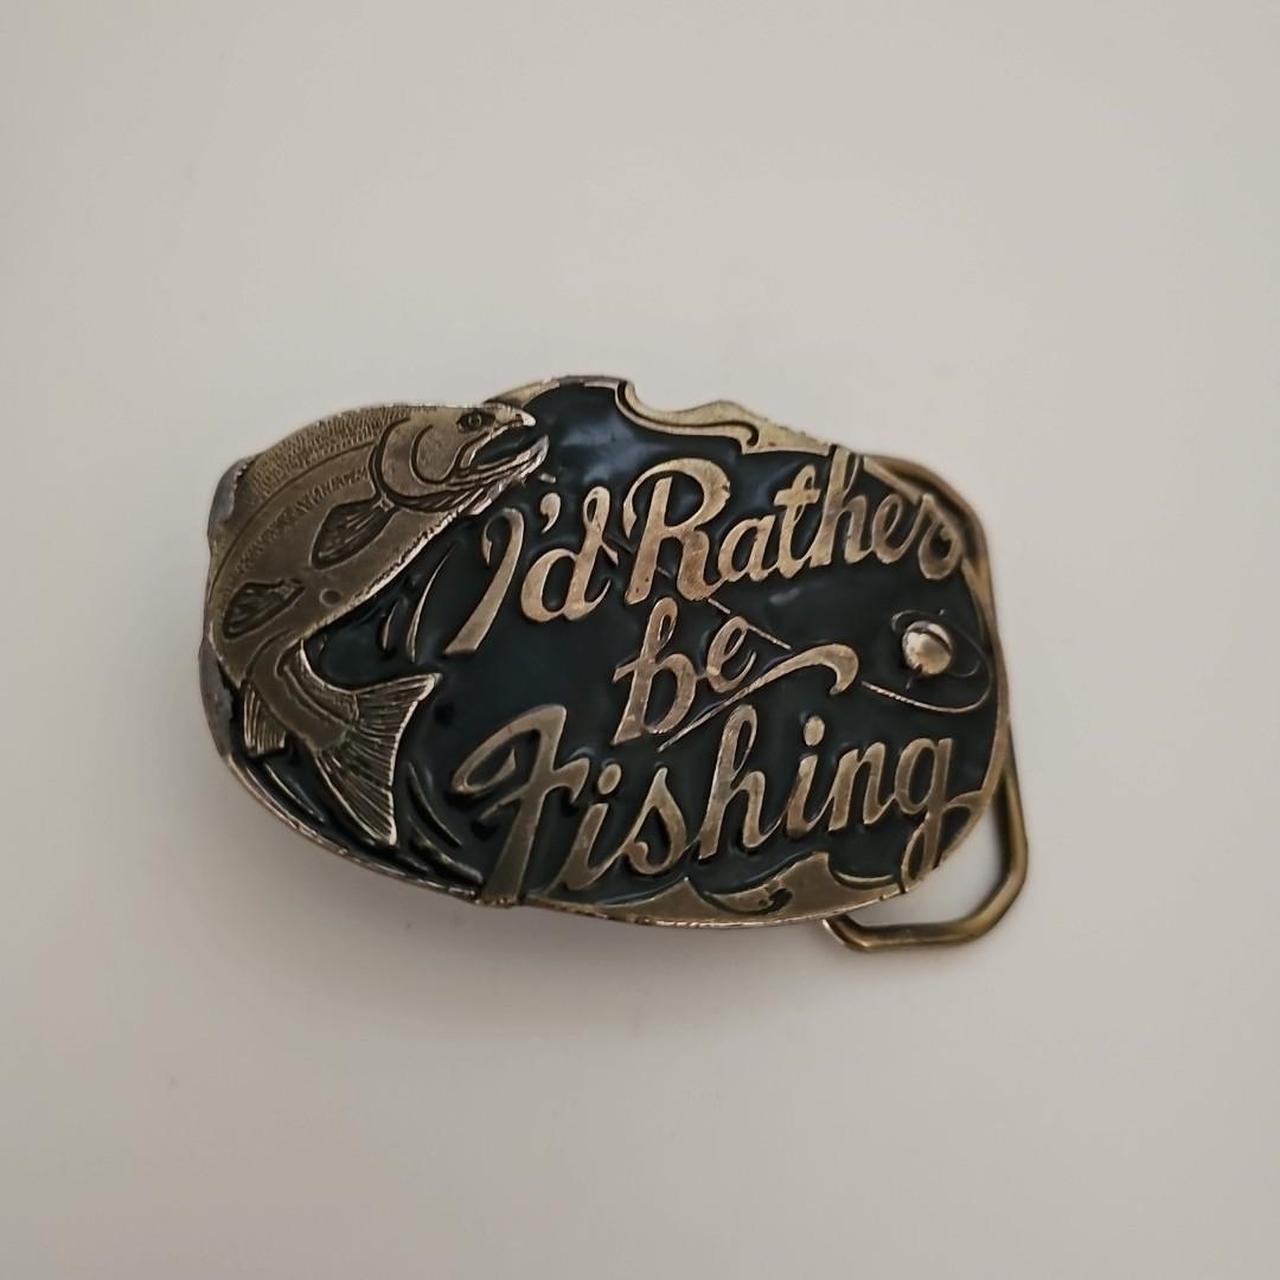 Vintage Fishing Brass Belt Buckle I'd Rather Be - Depop